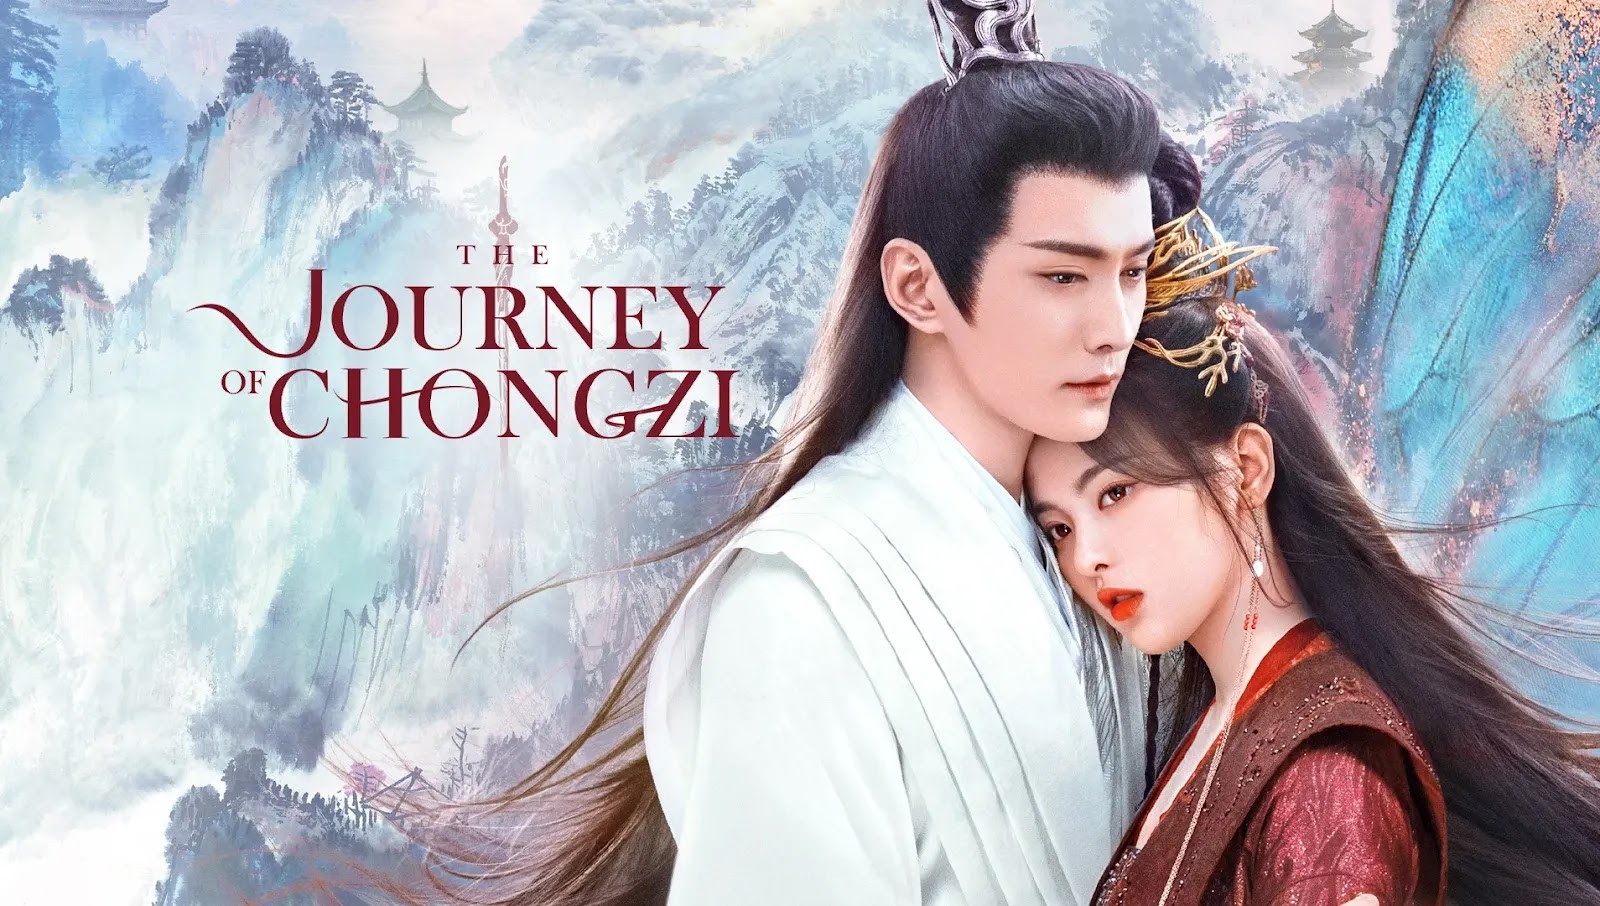 重紫 / Chong Zi / The Journey of Chong Zi